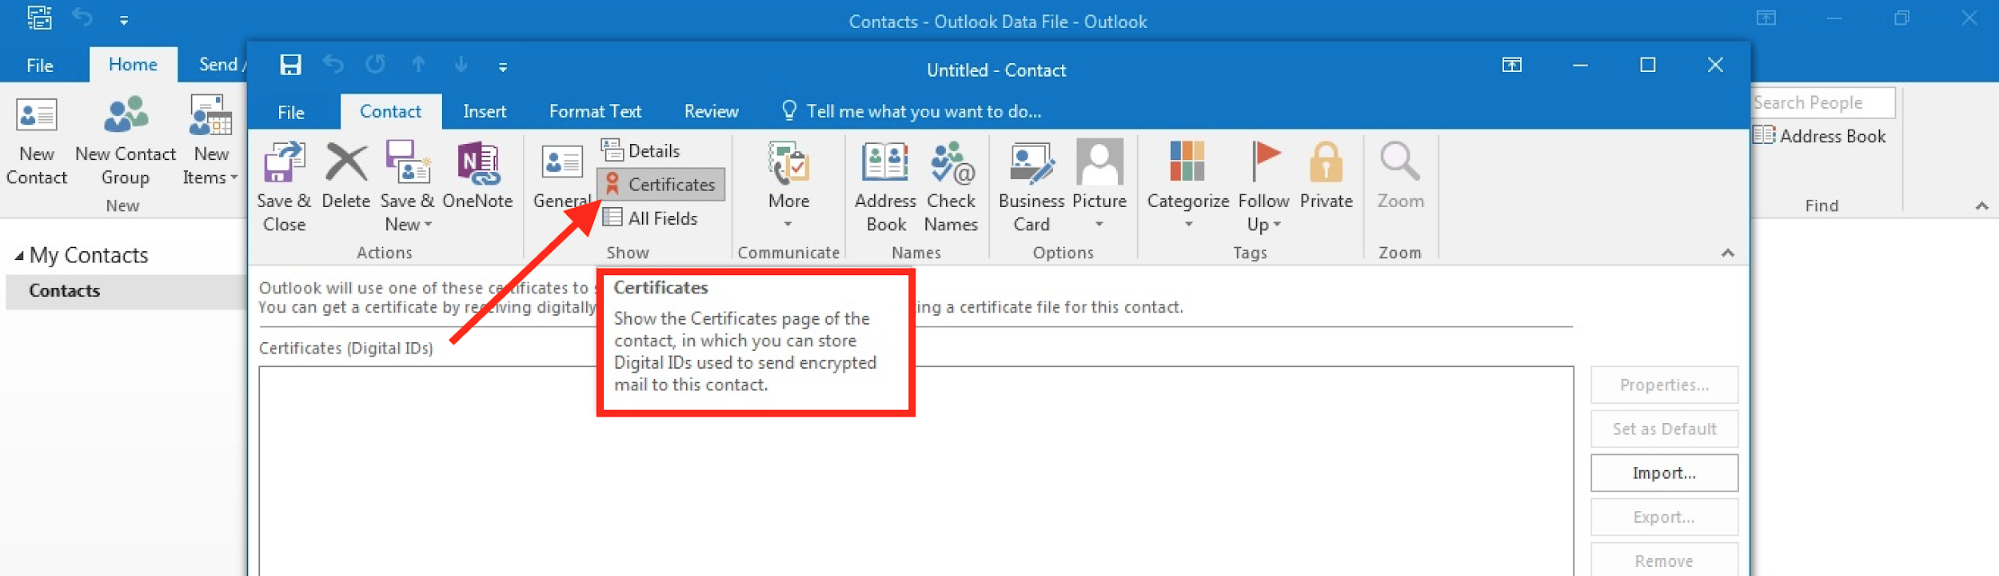 אפשרות תעודות דואר חדשות של Outlook